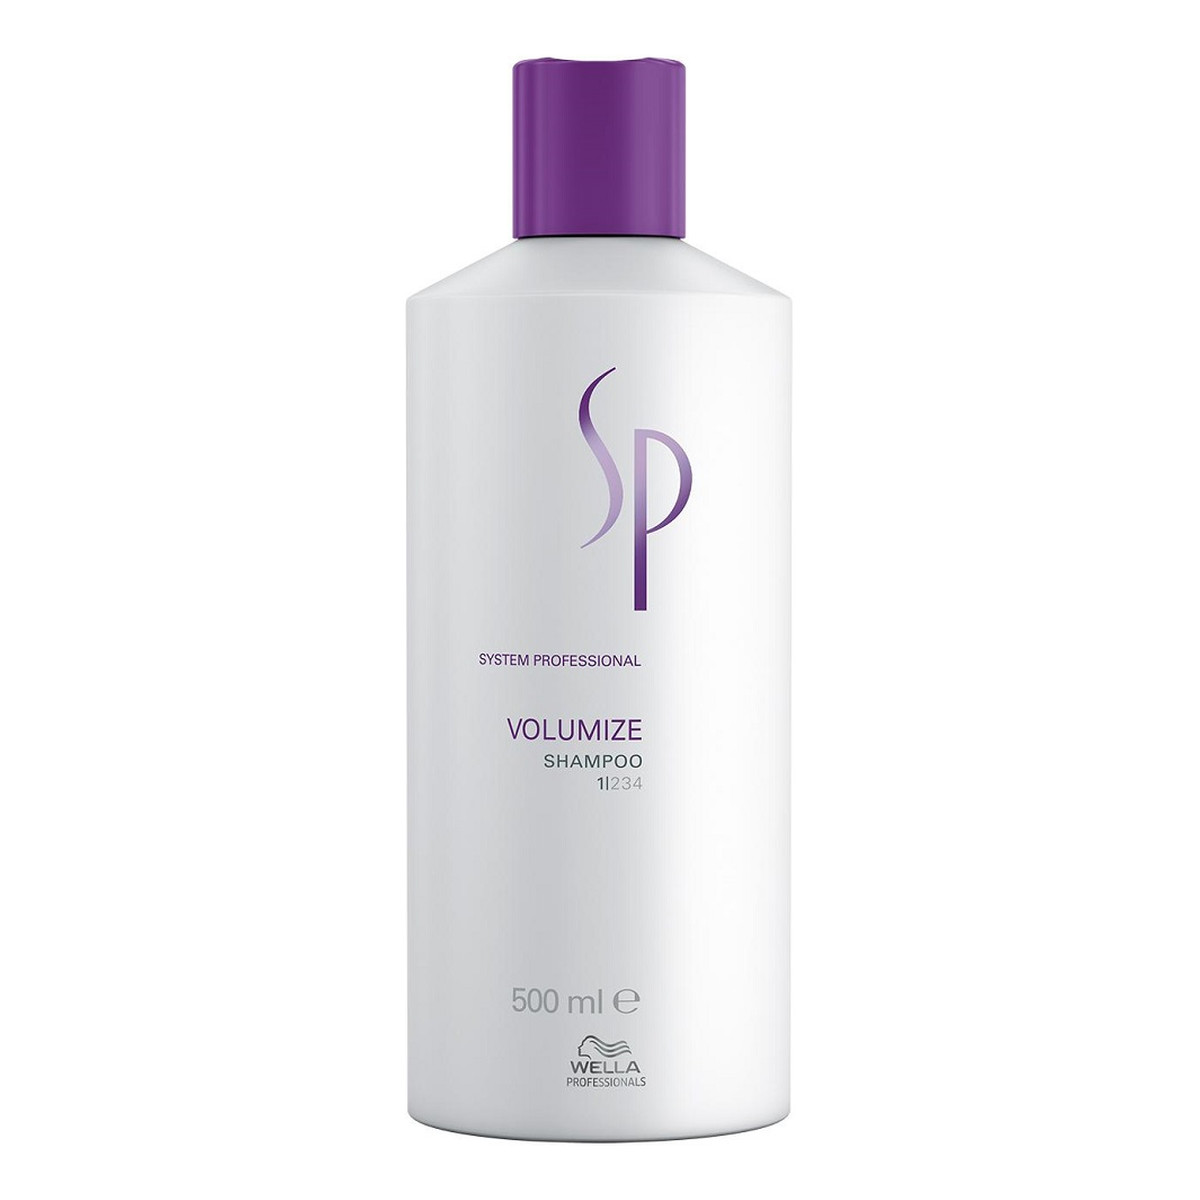 Wella Professionals Sp volumize shampoo szampon nadający włosom objętość 500ml